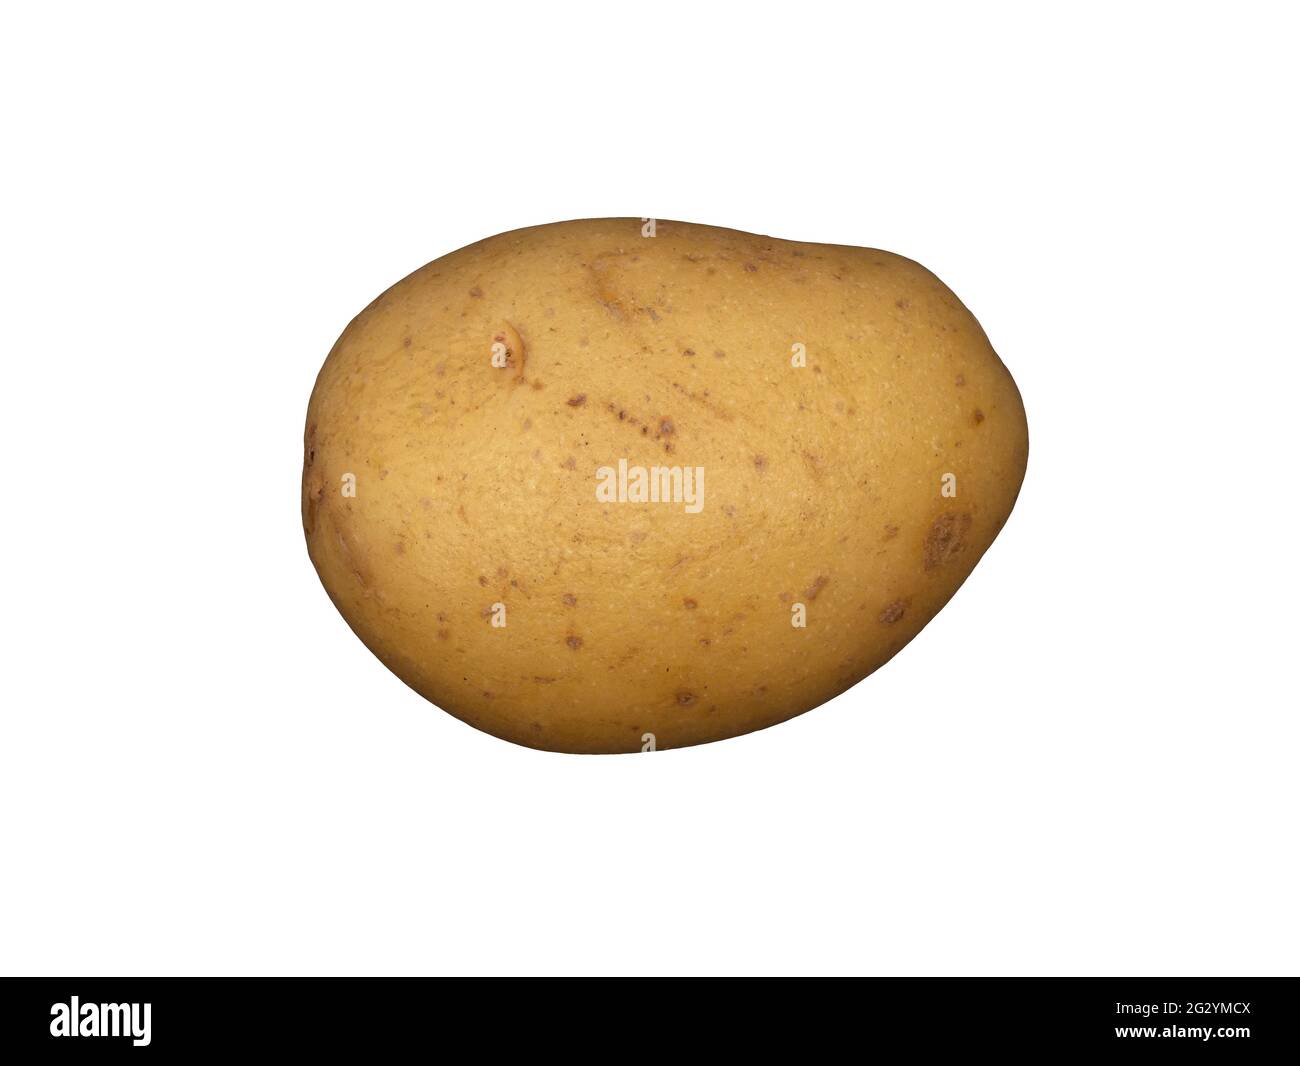 A white potato on a plain white background Stock Photo